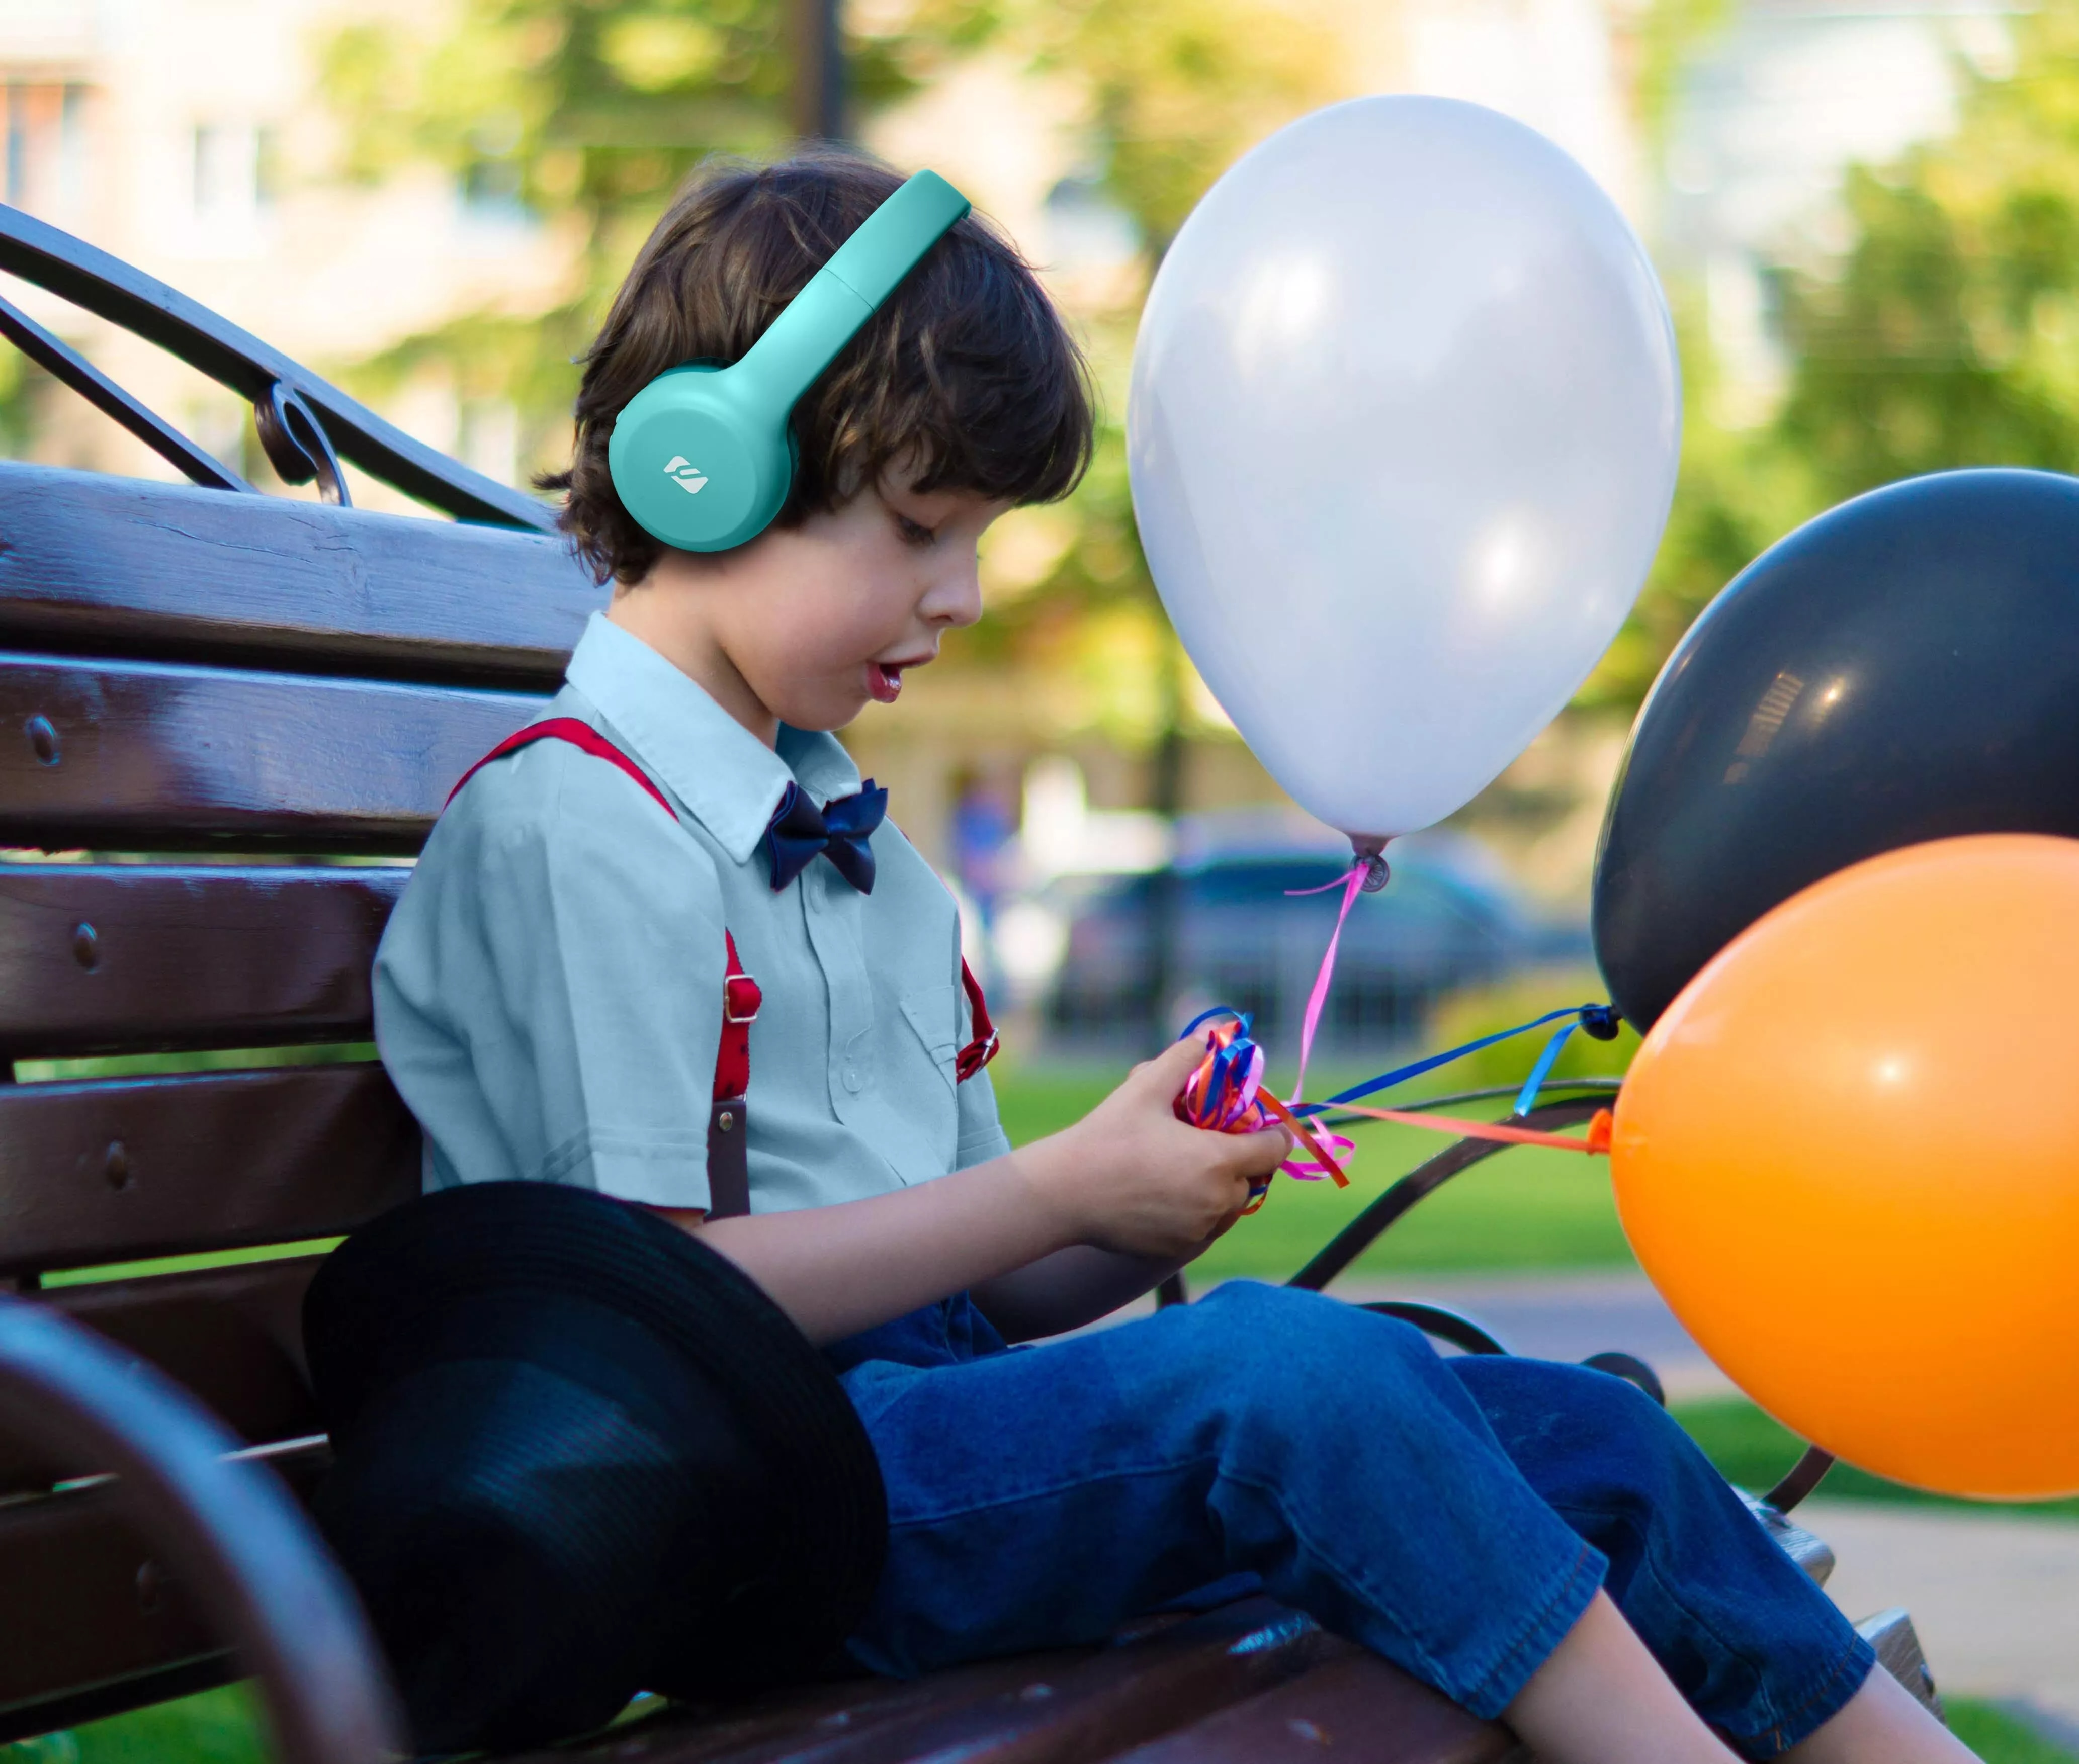 Auriculares Bluetooth On-Ear Wireless para niños, azul